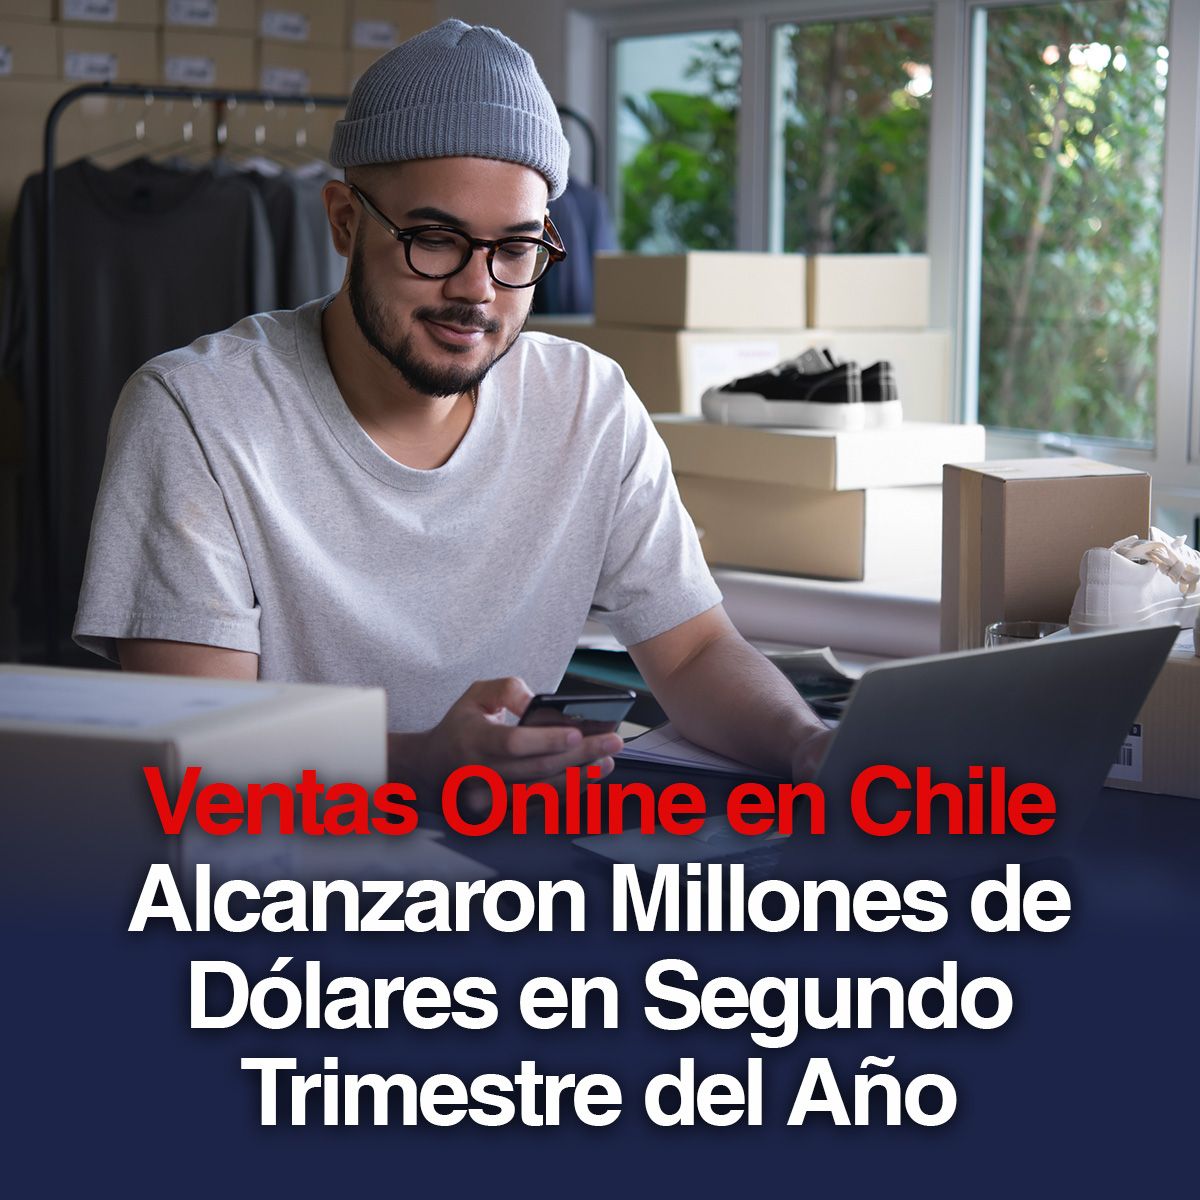 Ventas Online en Chile Alcanzaron Millones de Dólares en Segundo Trimestre del Año